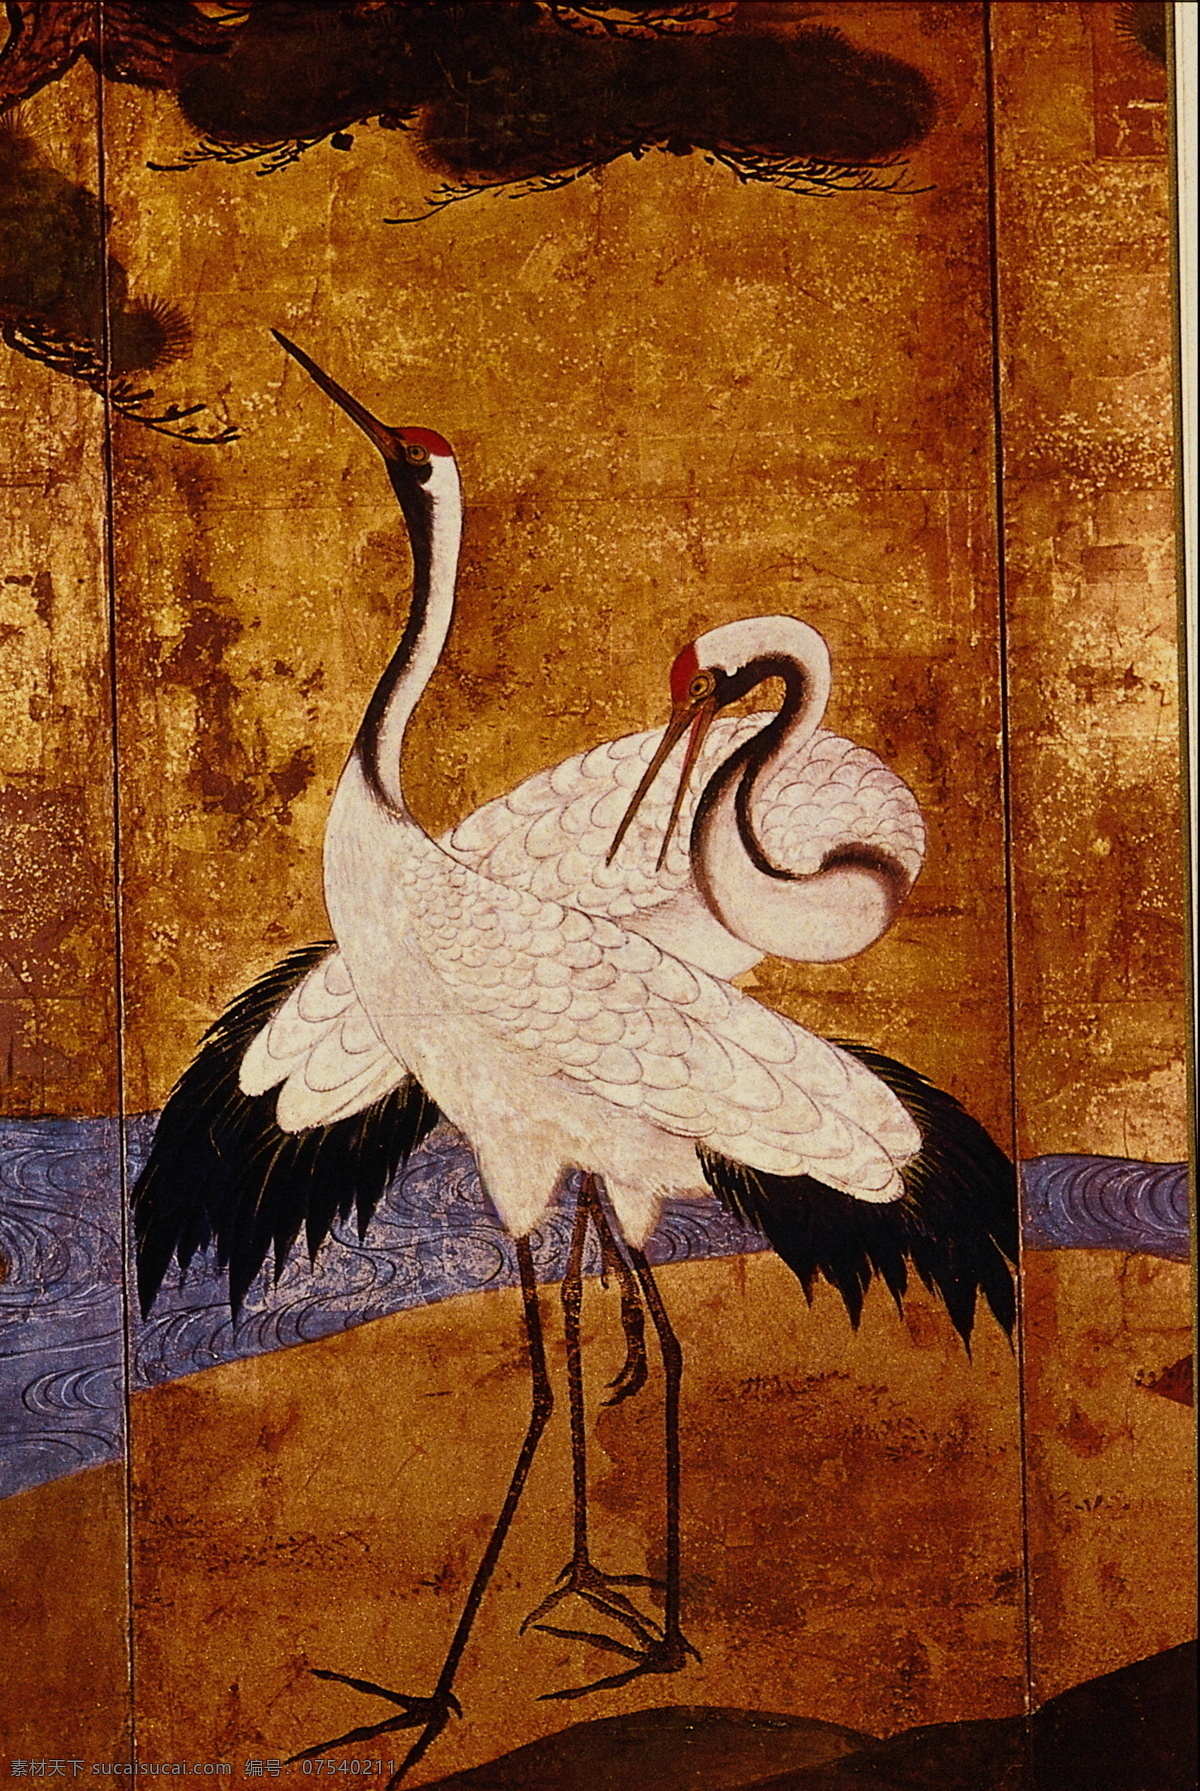 花鸟画 中国 古画 中国古画 设计素材 花鸟名画 古典藏画 书画美术 棕色